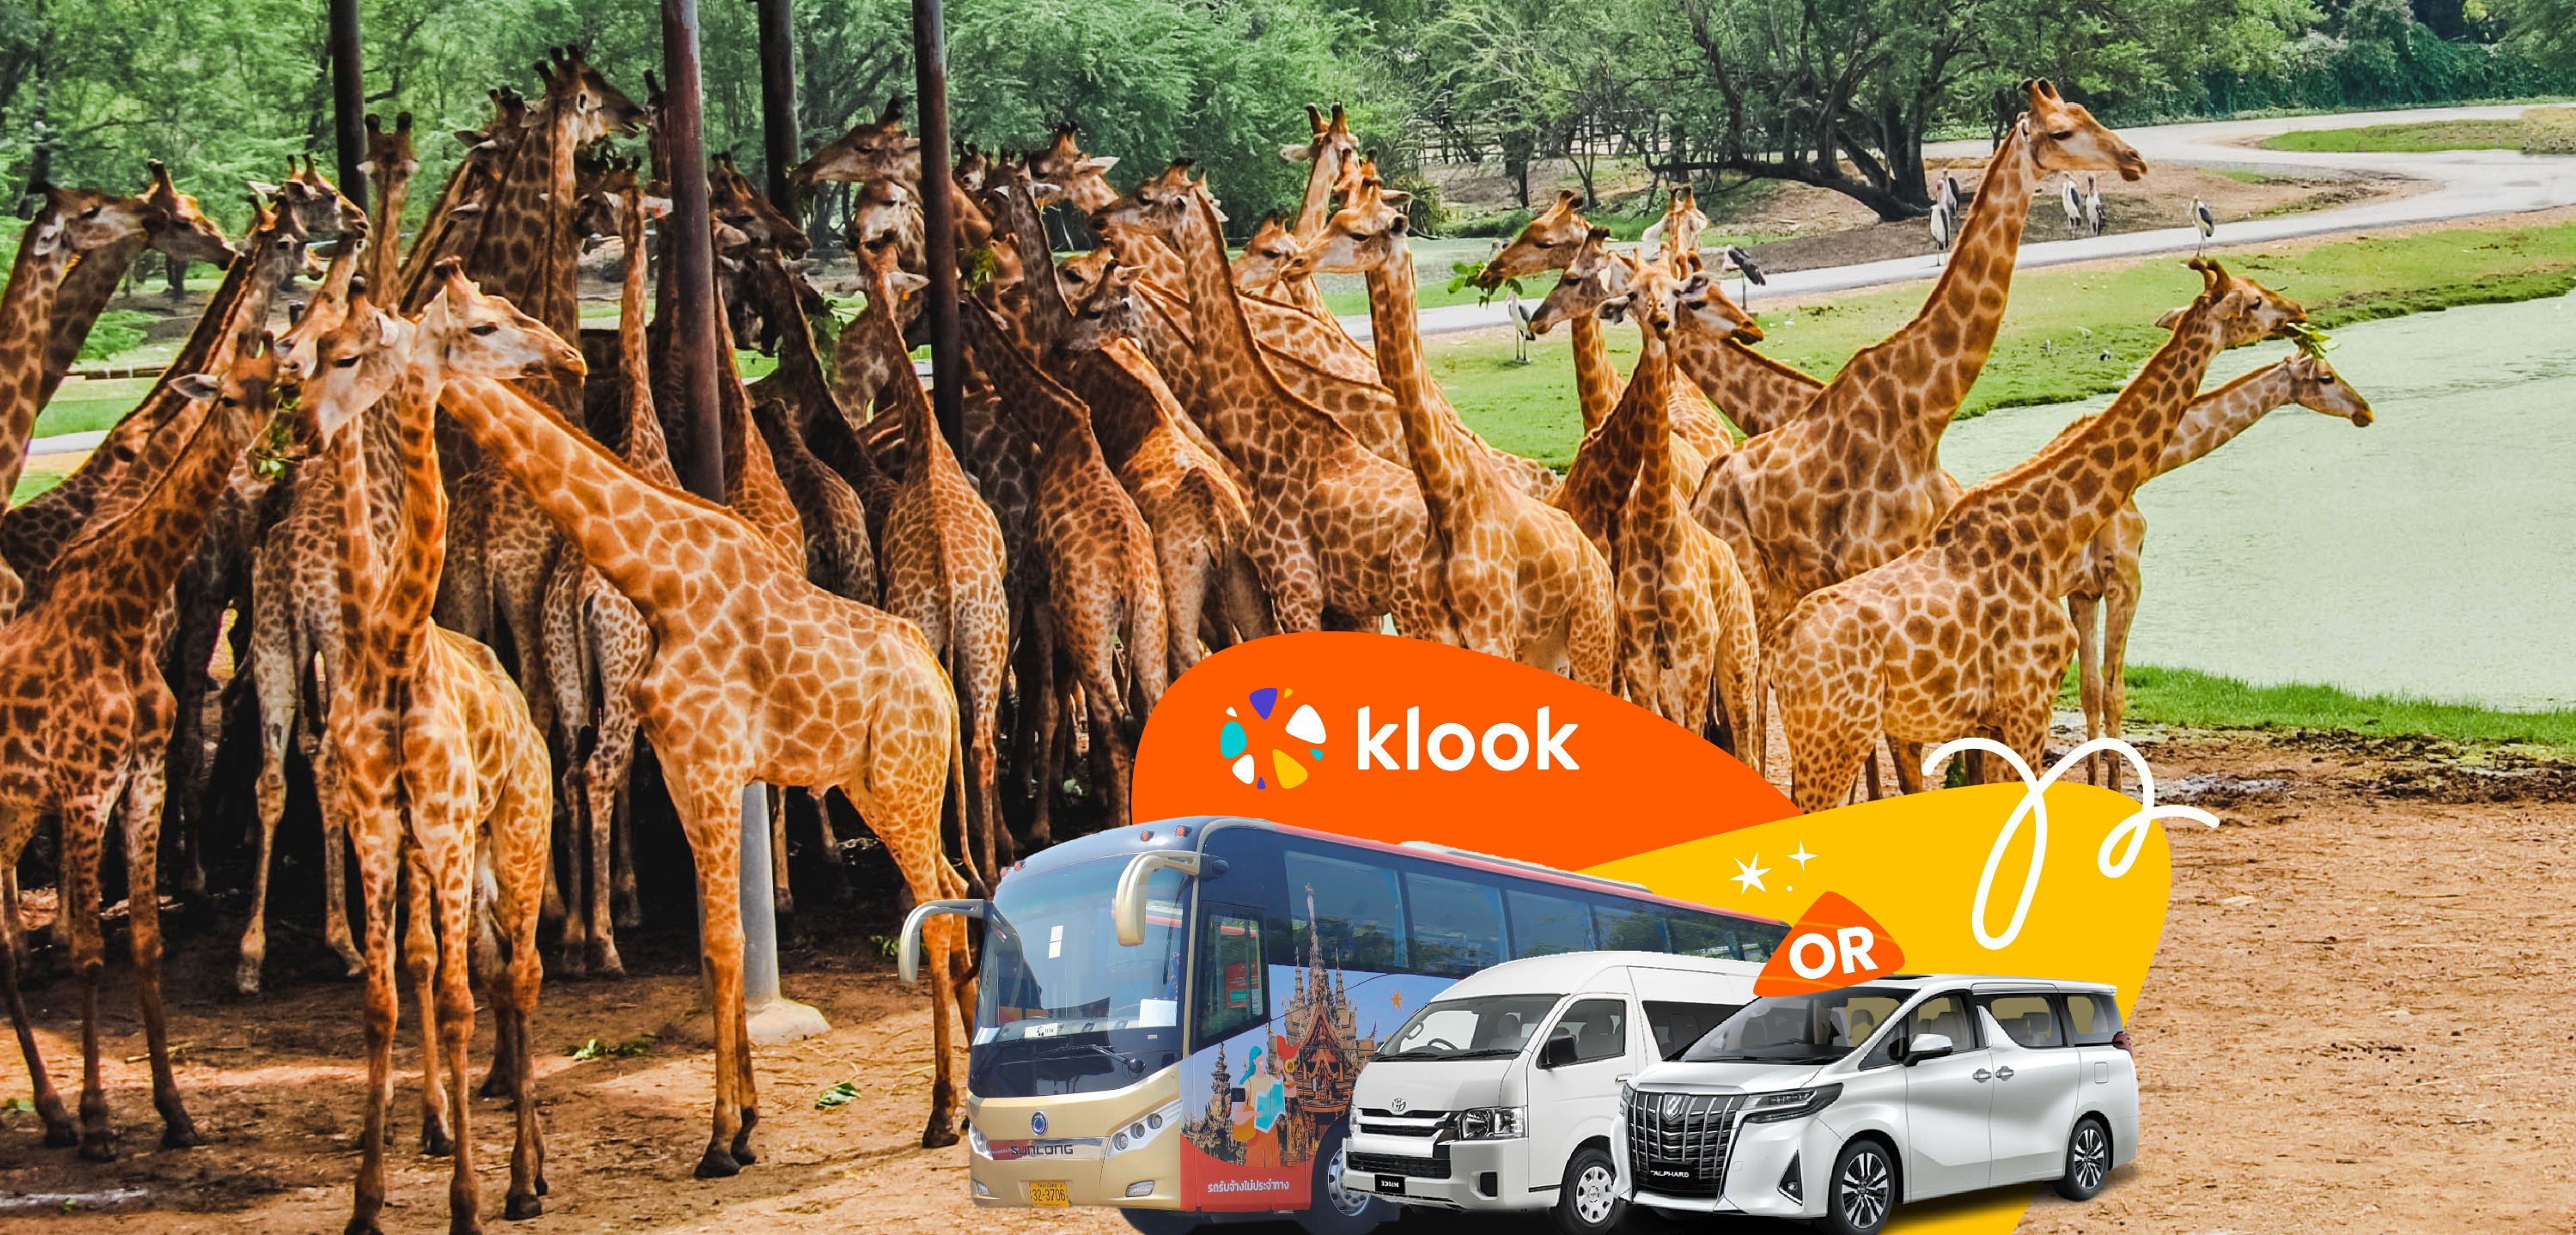 私人 / 共乘景點接送 曼谷賽福瑞野生動物園（Bangkok Safari World）接送服務